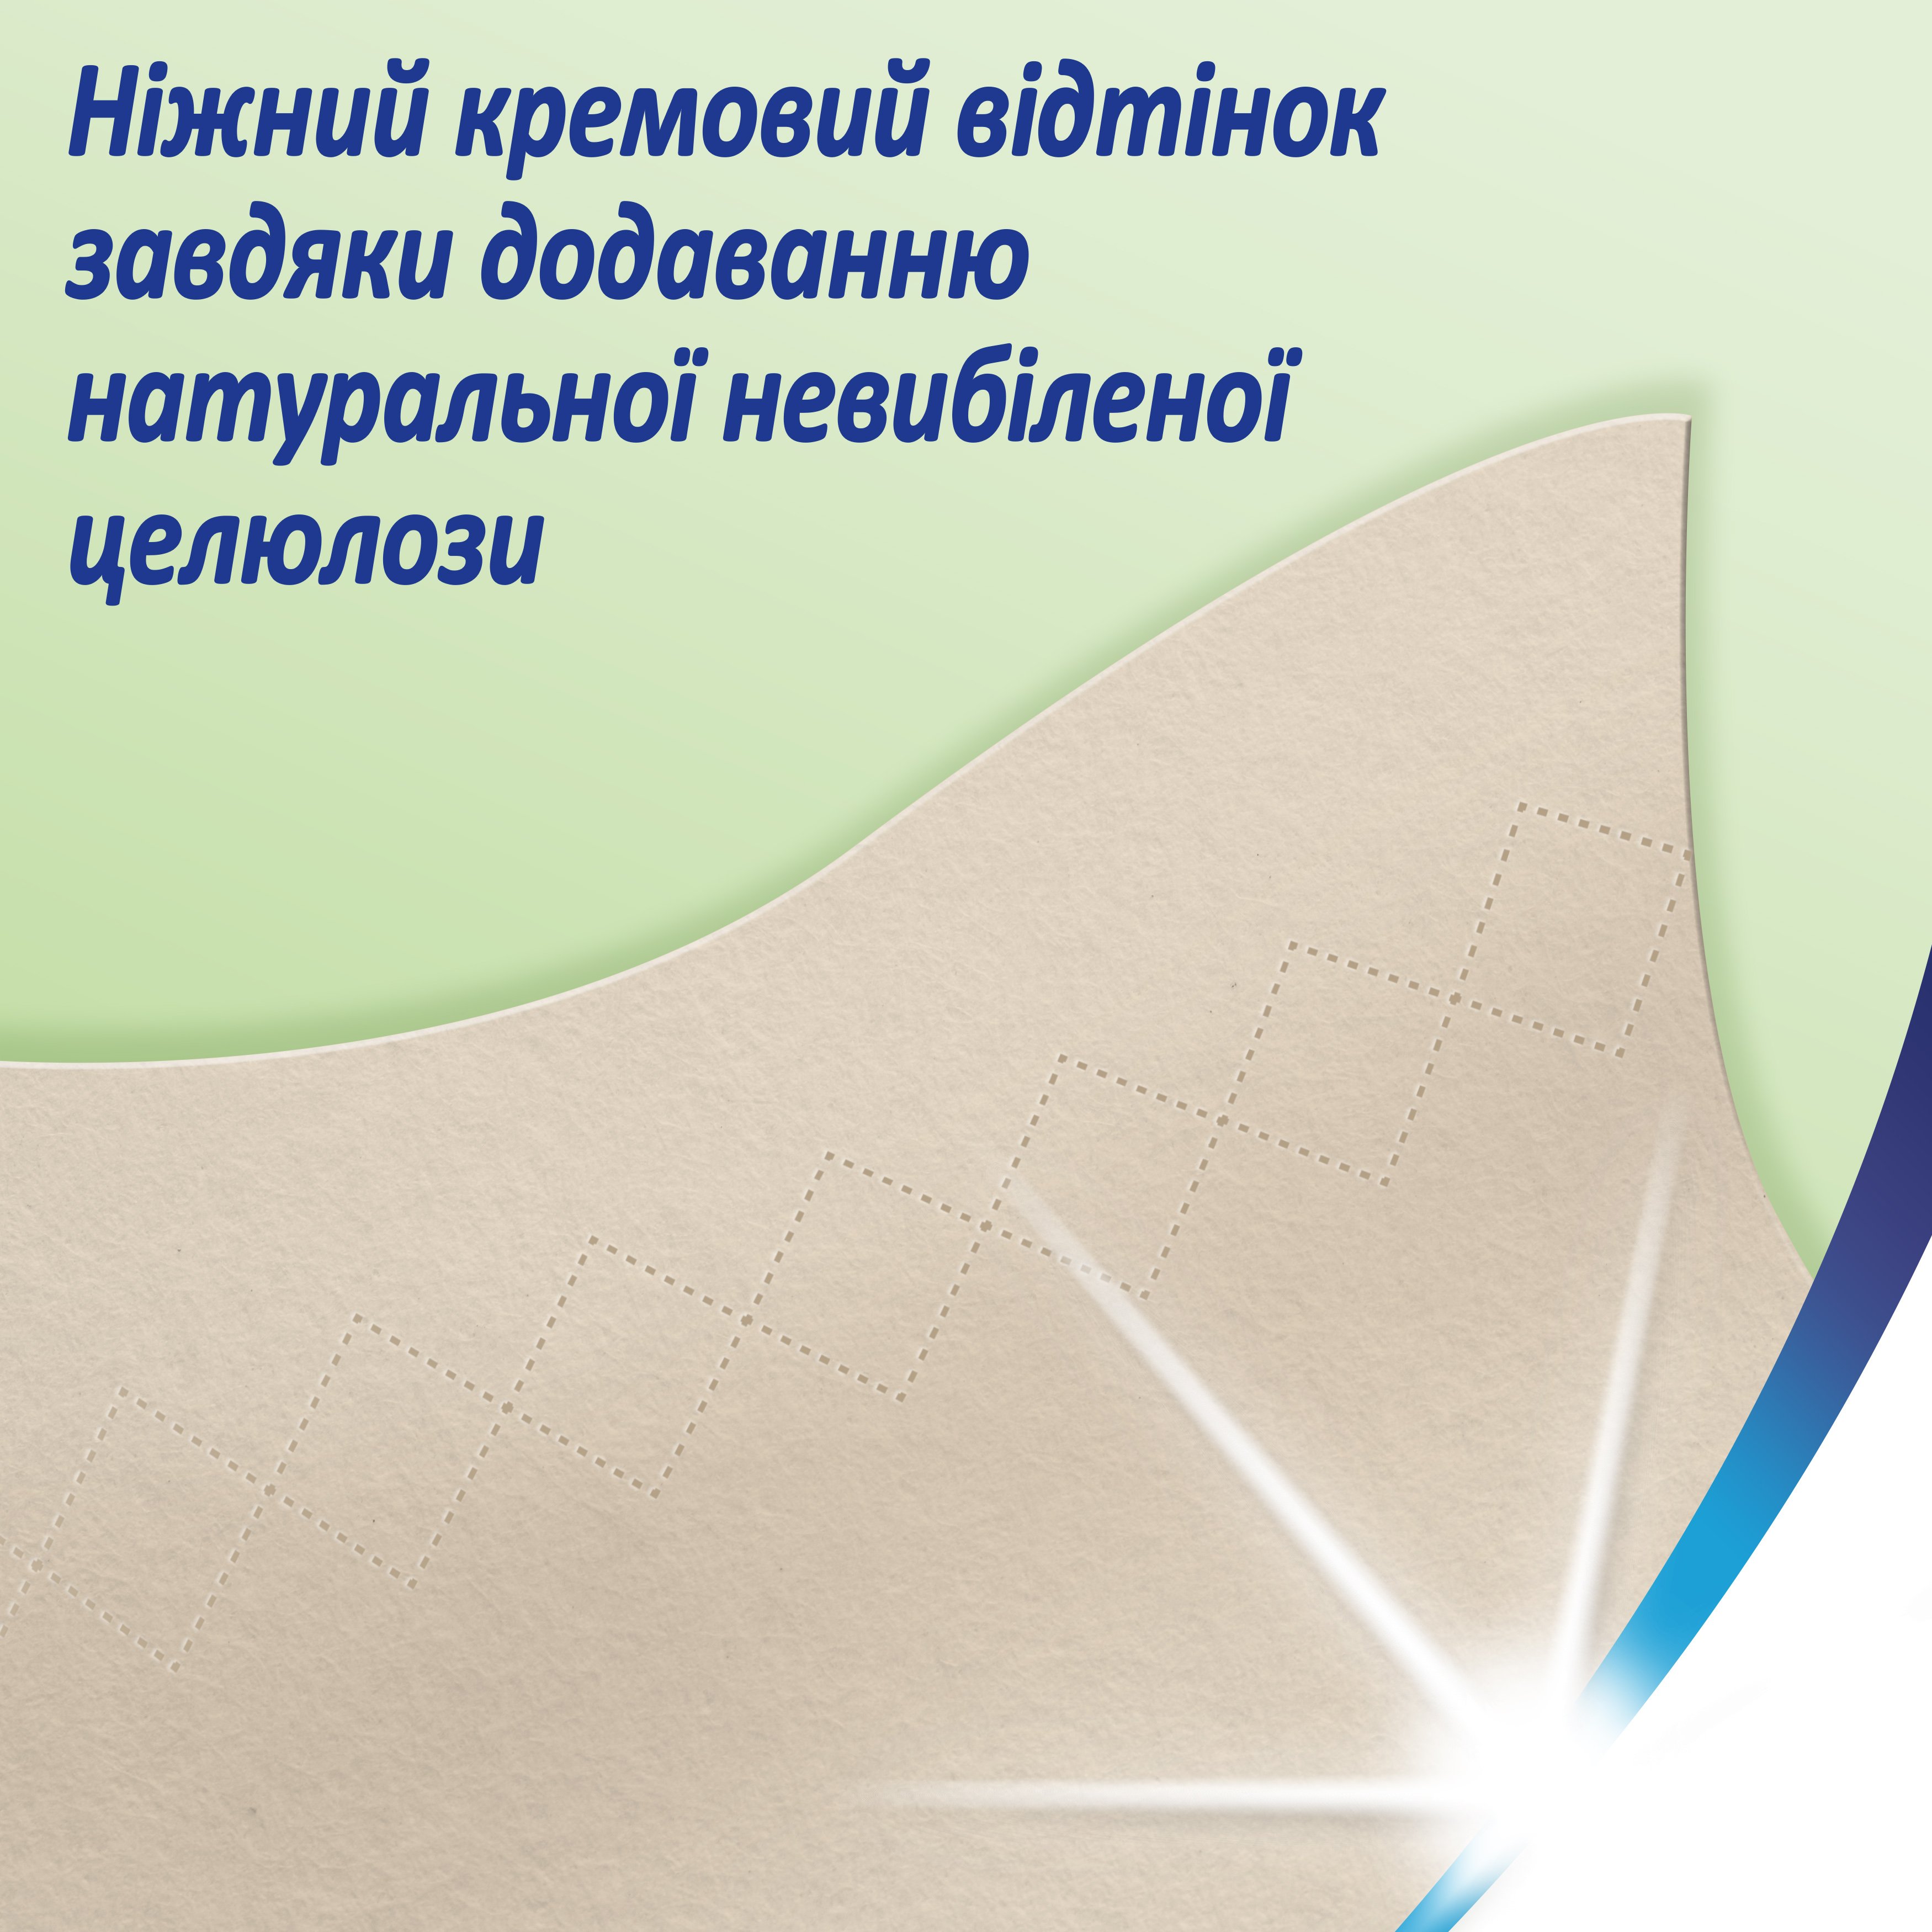 Носовые платки Zewa Softis Natural Soft, четырехслойные, 10 уп. по 9 шт. (870033) - фото 6